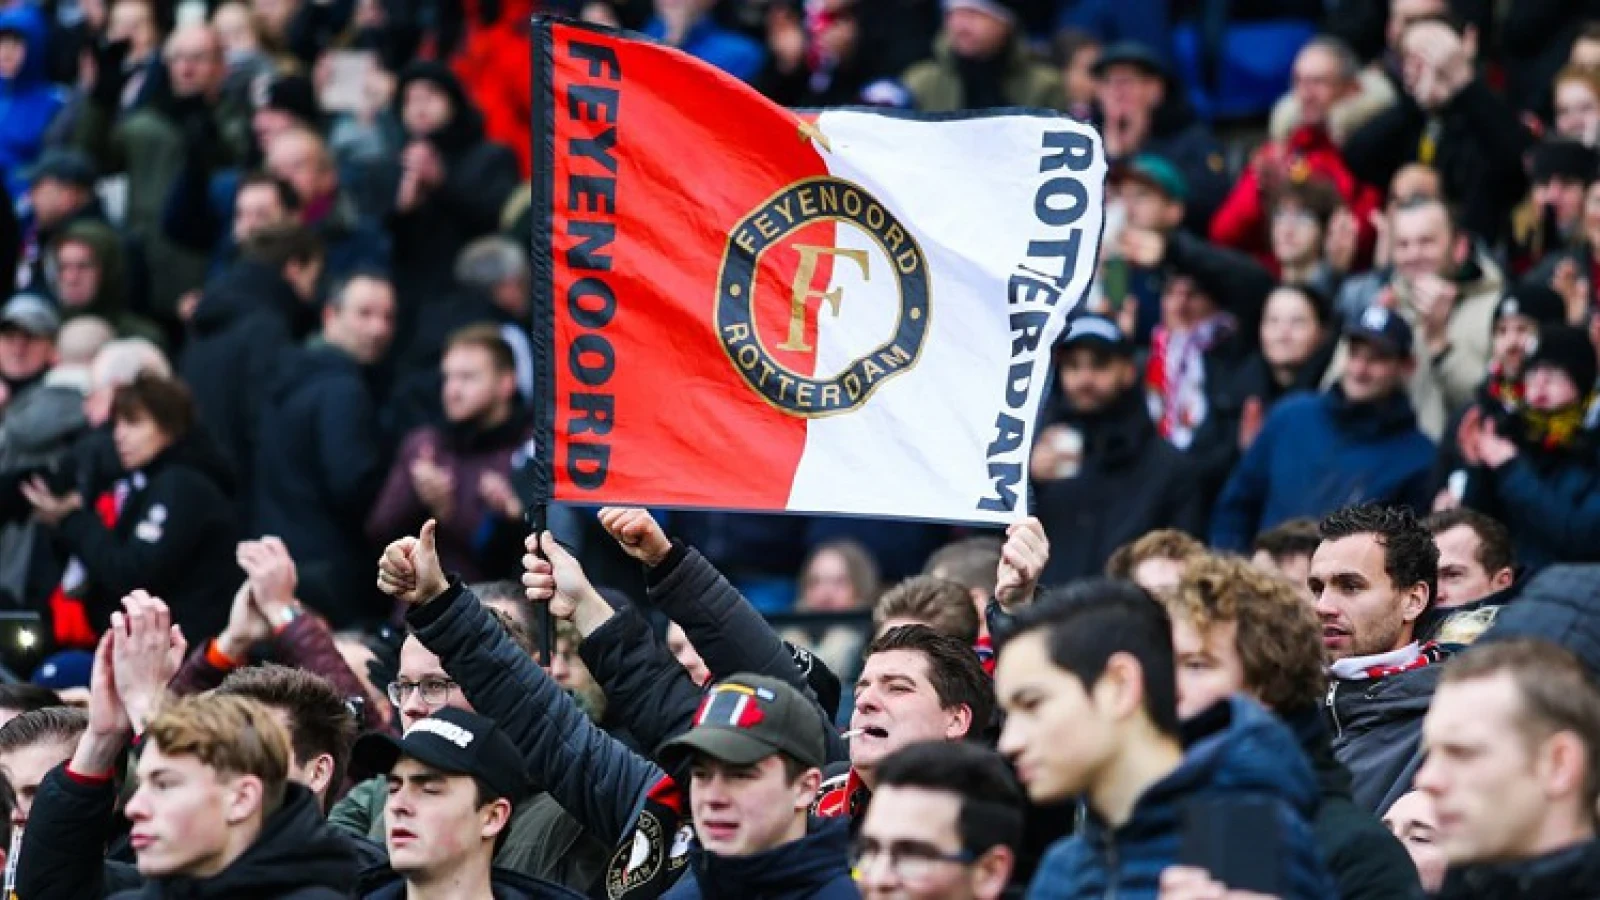 VIDEO: 'Marijnissen beleeft Feyenoord op eigen manier'